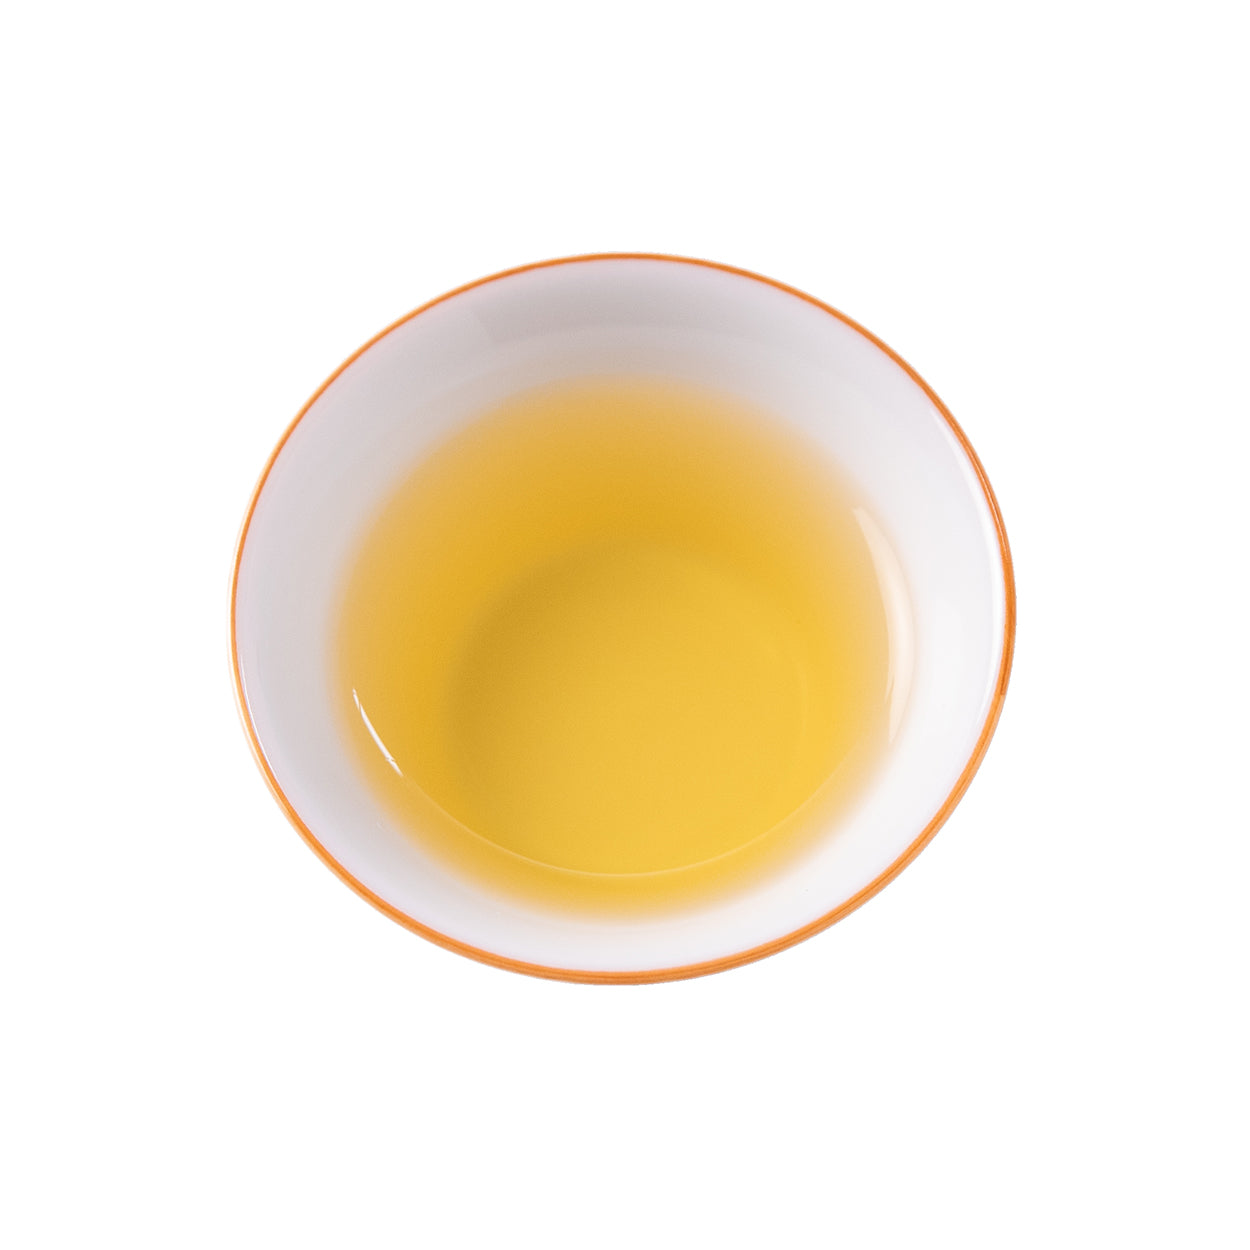 文山包種茶 - Wenshan Baozhong Oolong Tea